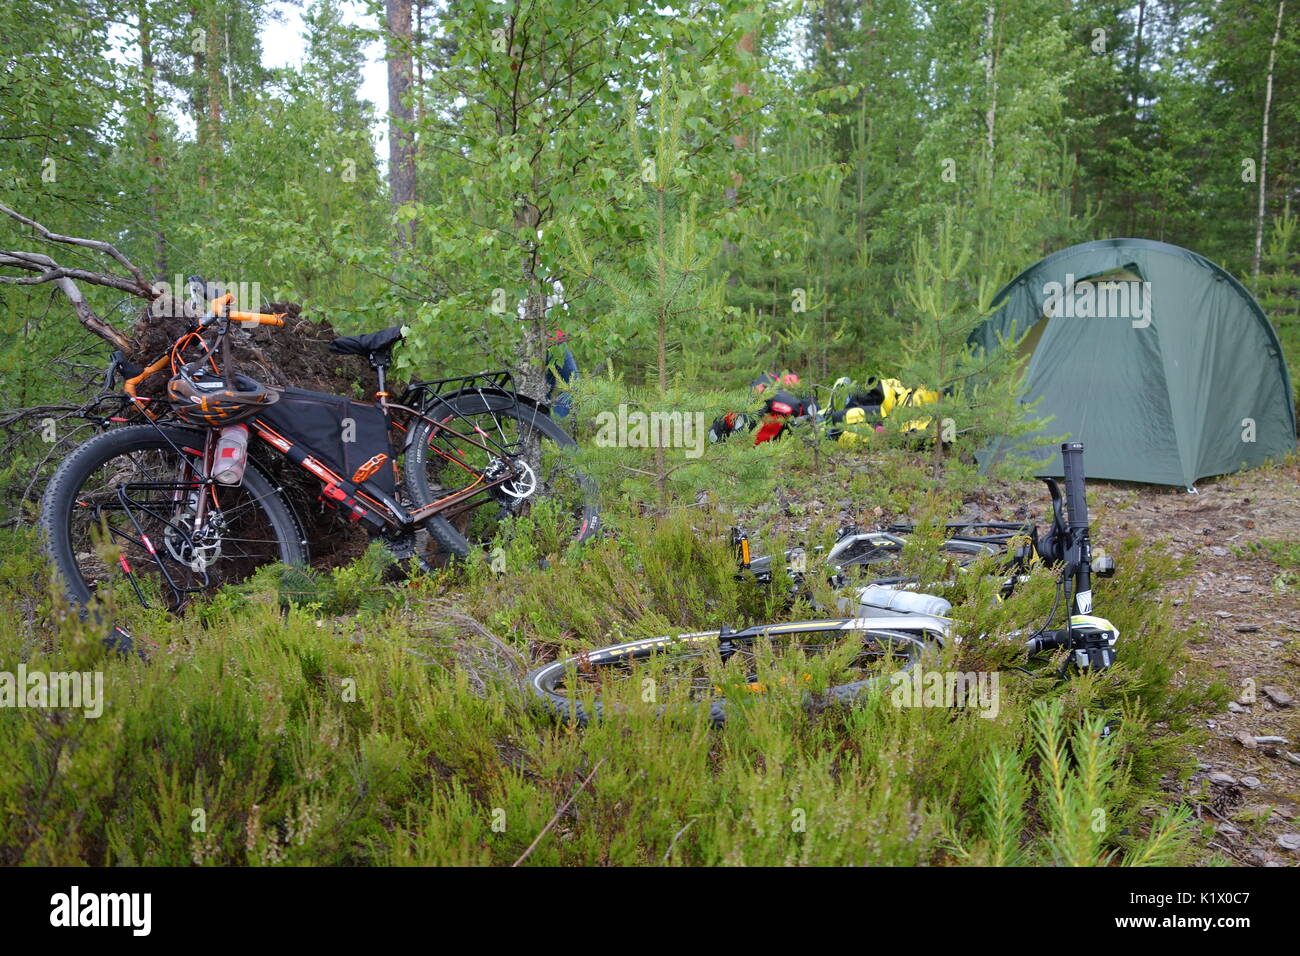 Taipalsaari, Finnland - 1. Juli 2015: Bike Verpackung Fahrräder, Packtaschen,  Zelt und andere Campingausrüstung im Wald im Osten Finnlands  Stockfotografie - Alamy